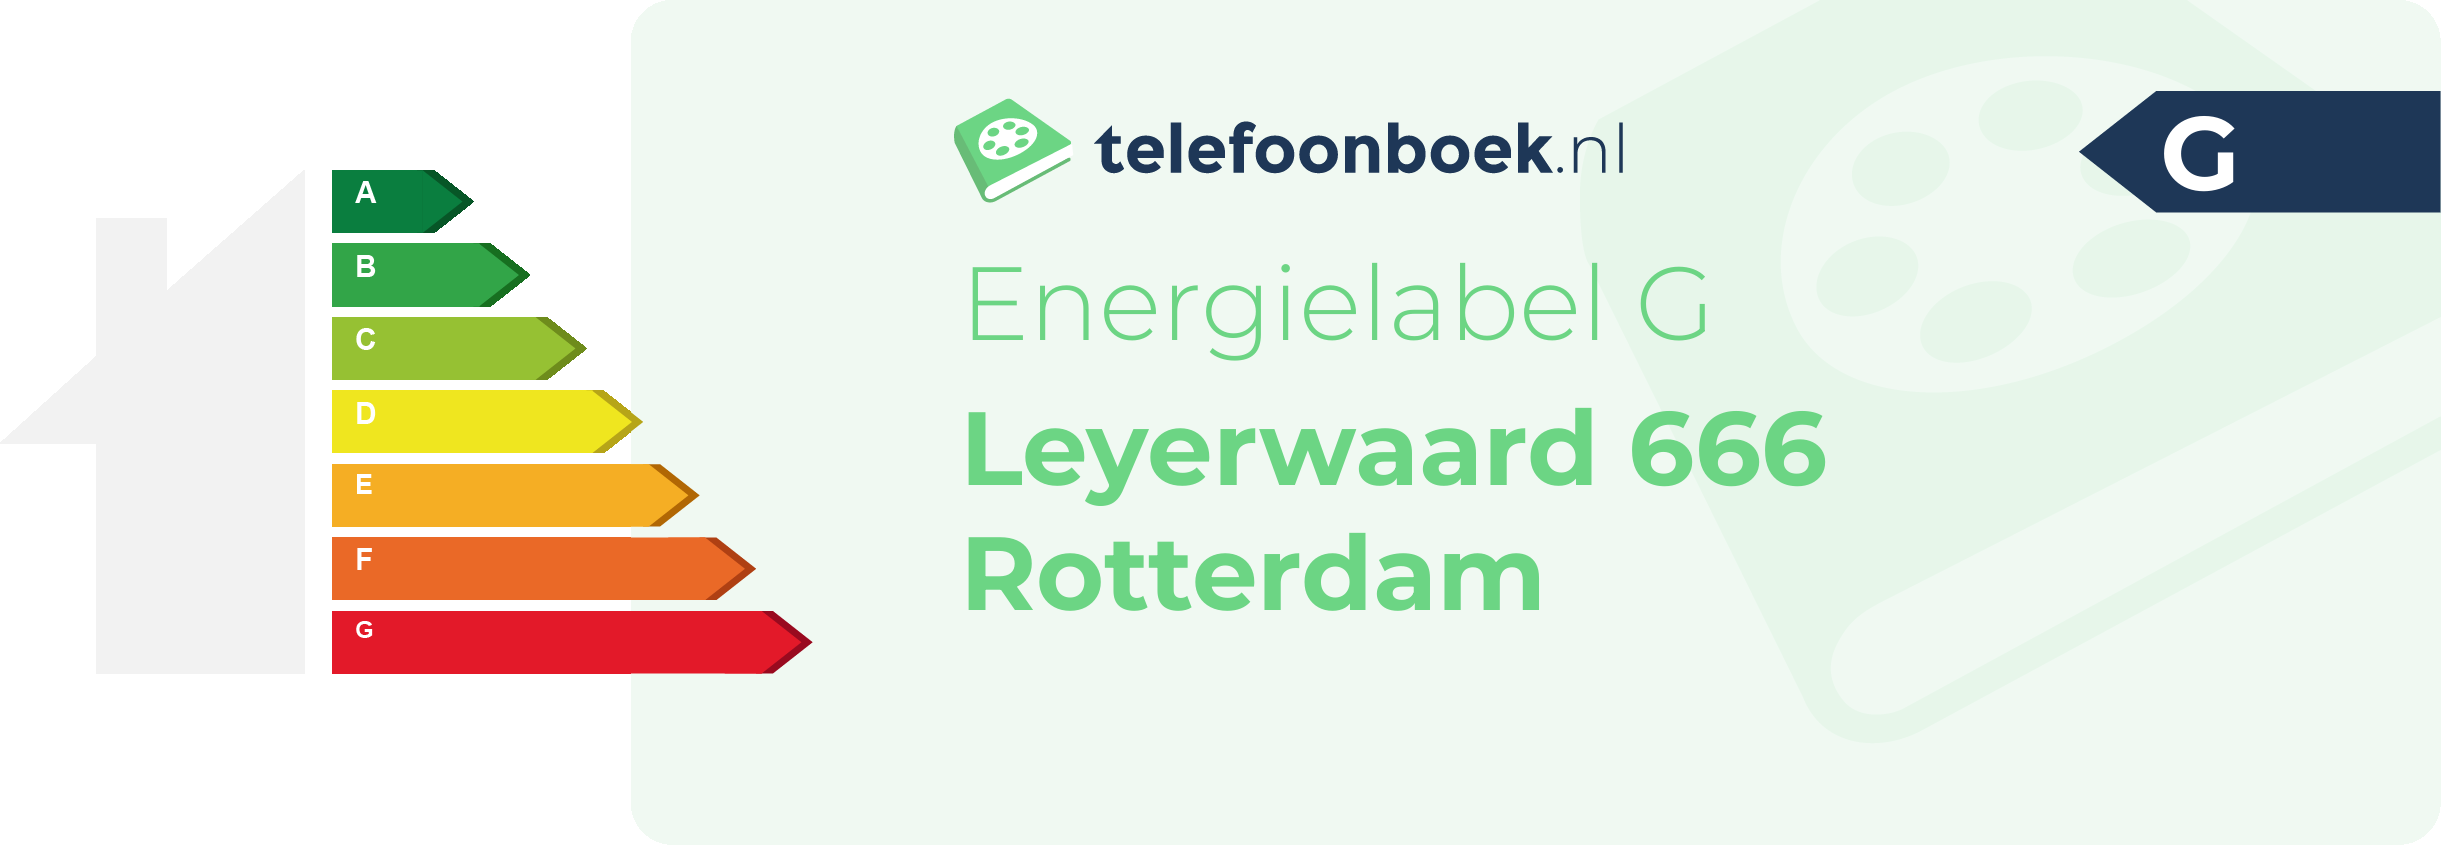 Energielabel Leyerwaard 666 Rotterdam